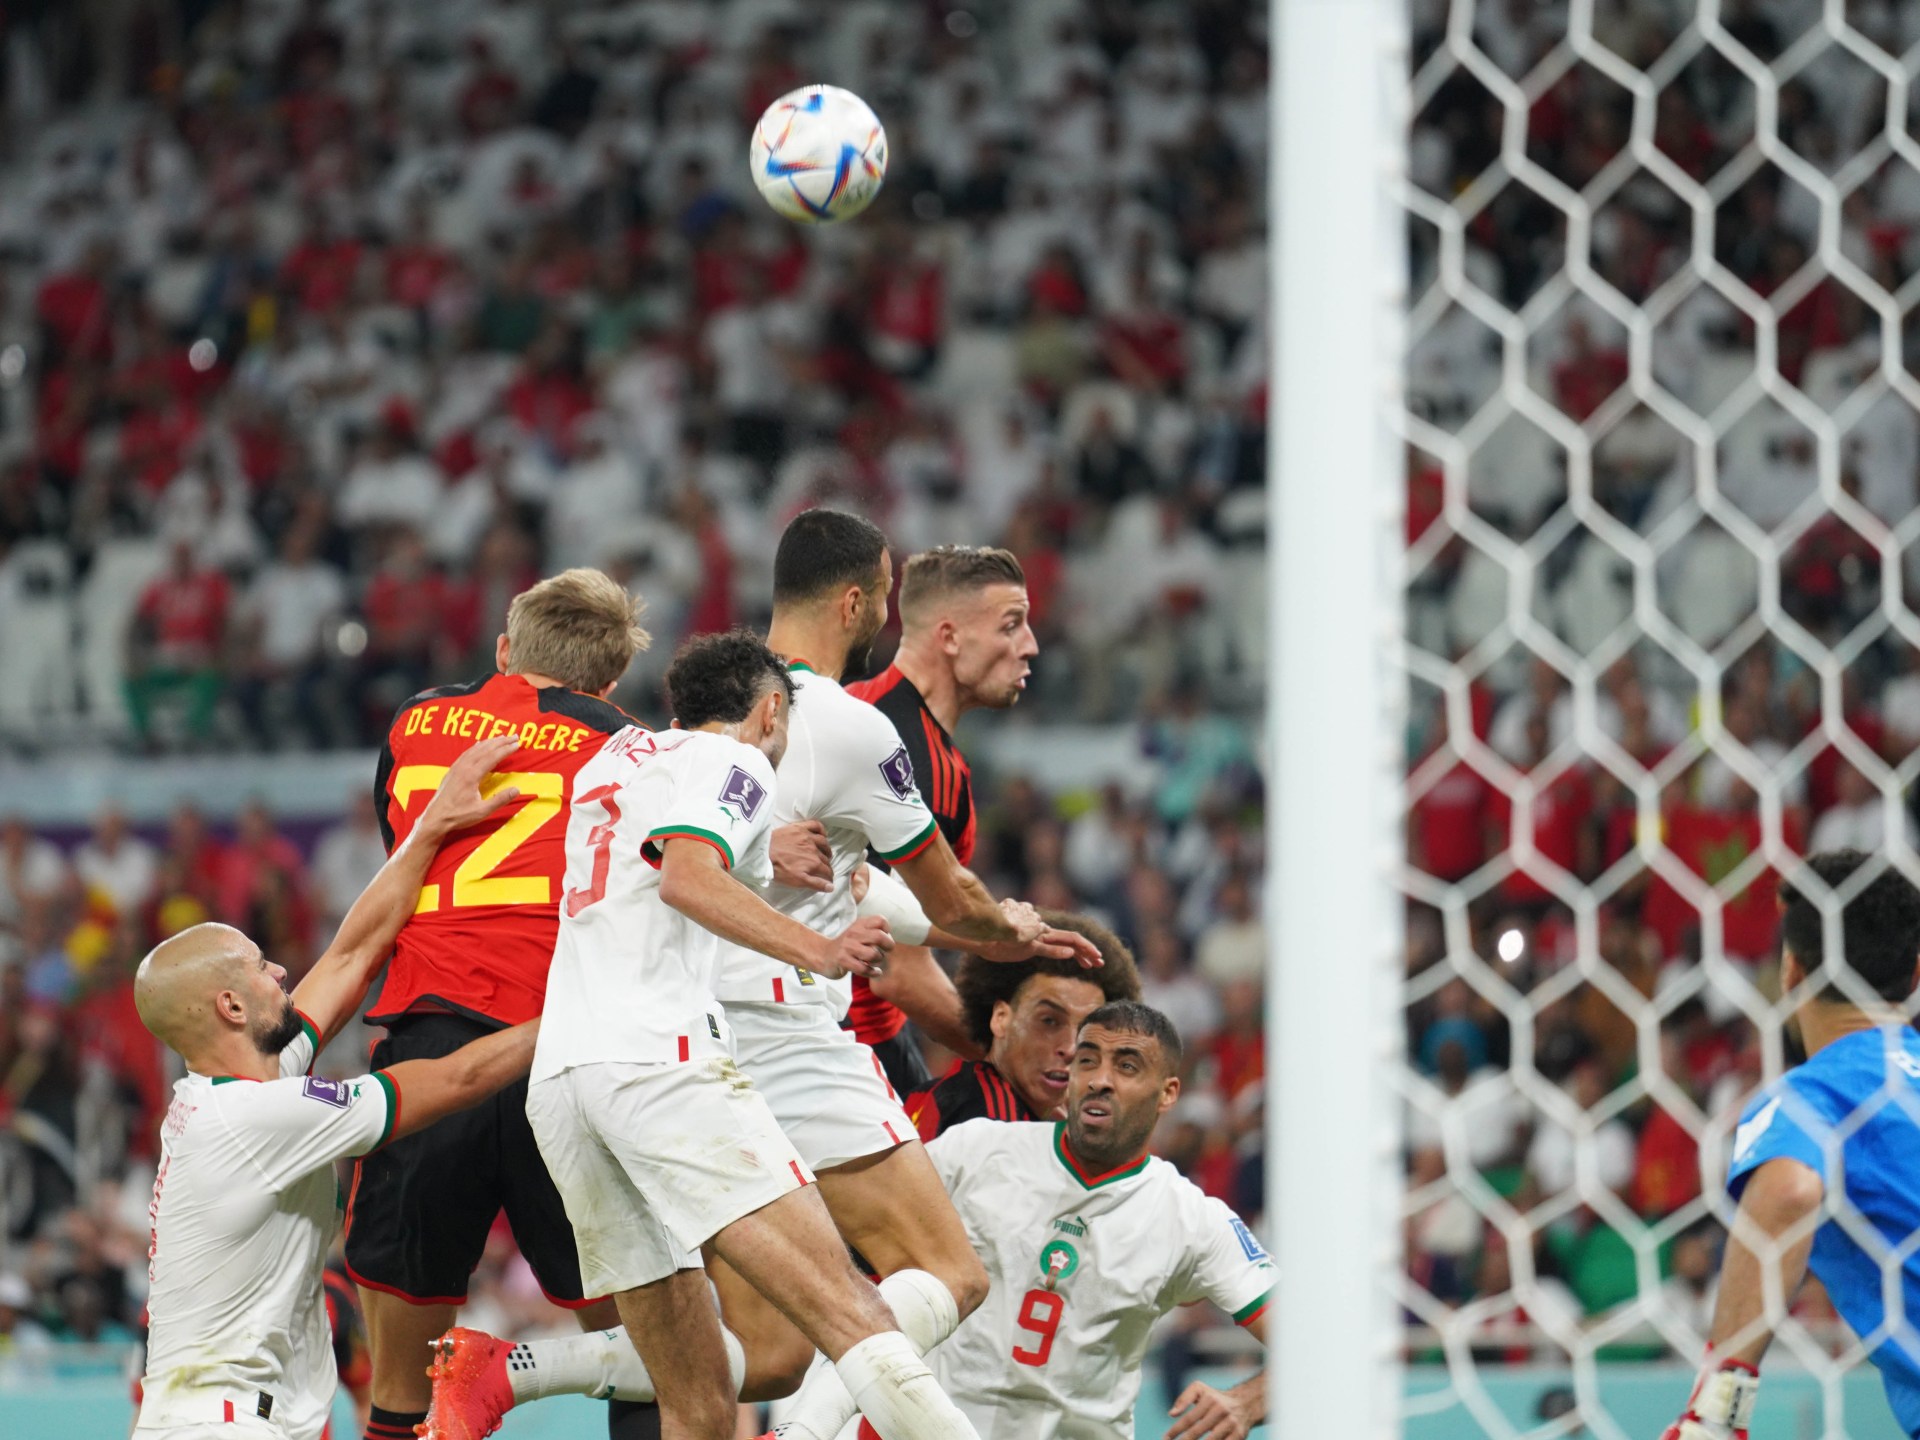 Photographs: Morocco upset Belgium to assert long-awaited World Cup win